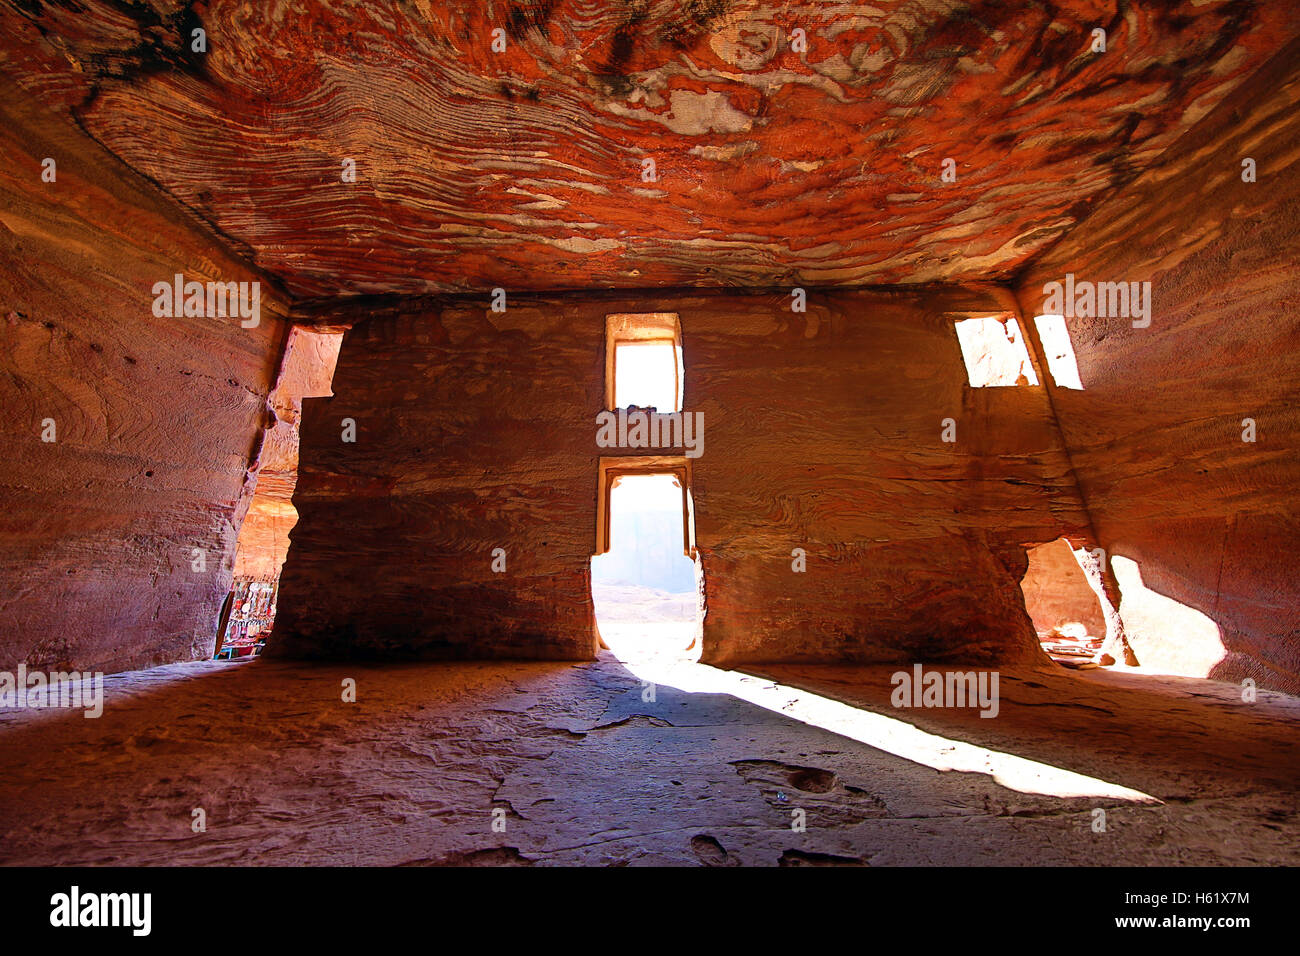 La lumière pénétrant par les fenêtres de l'Urne tombe de les tombeaux royaux dans la roche ville de Petra, Jordanie Banque D'Images